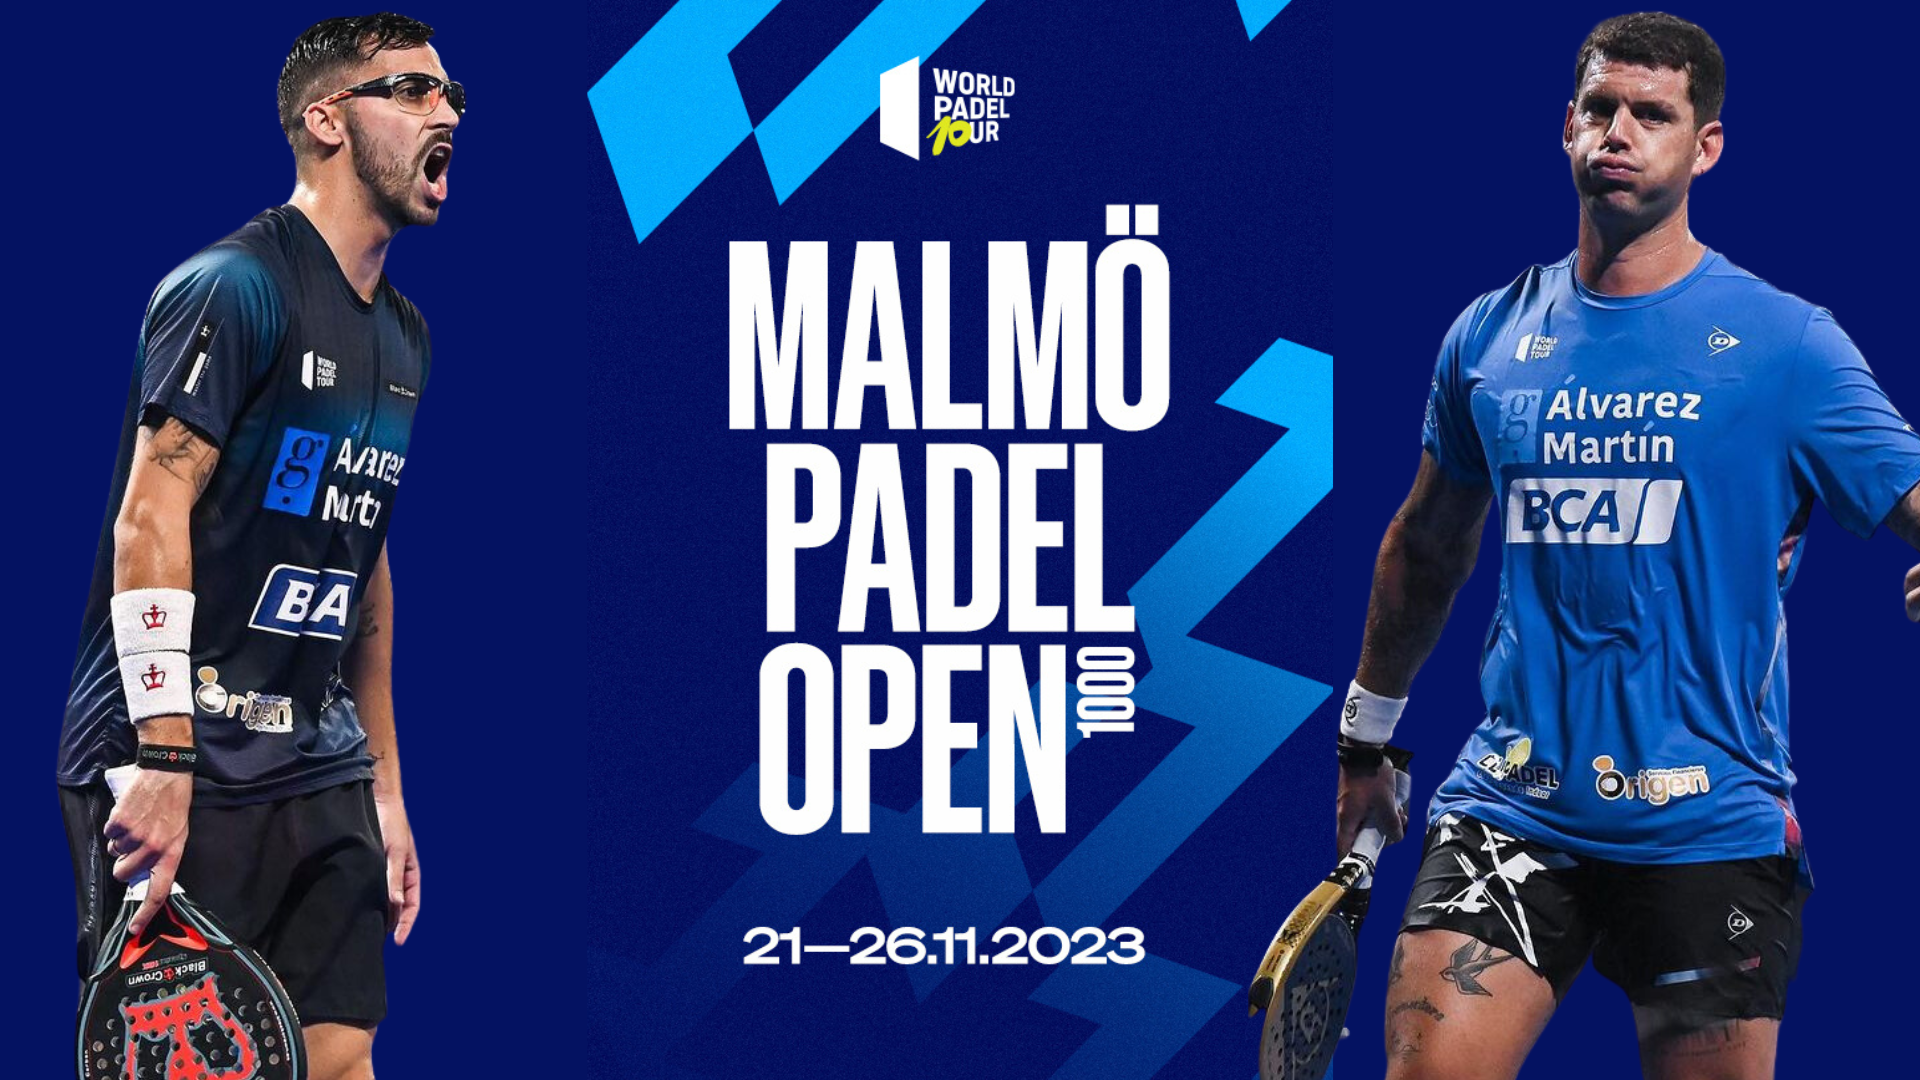 Moyano Gil cuadros Malmo Open WPT 2023